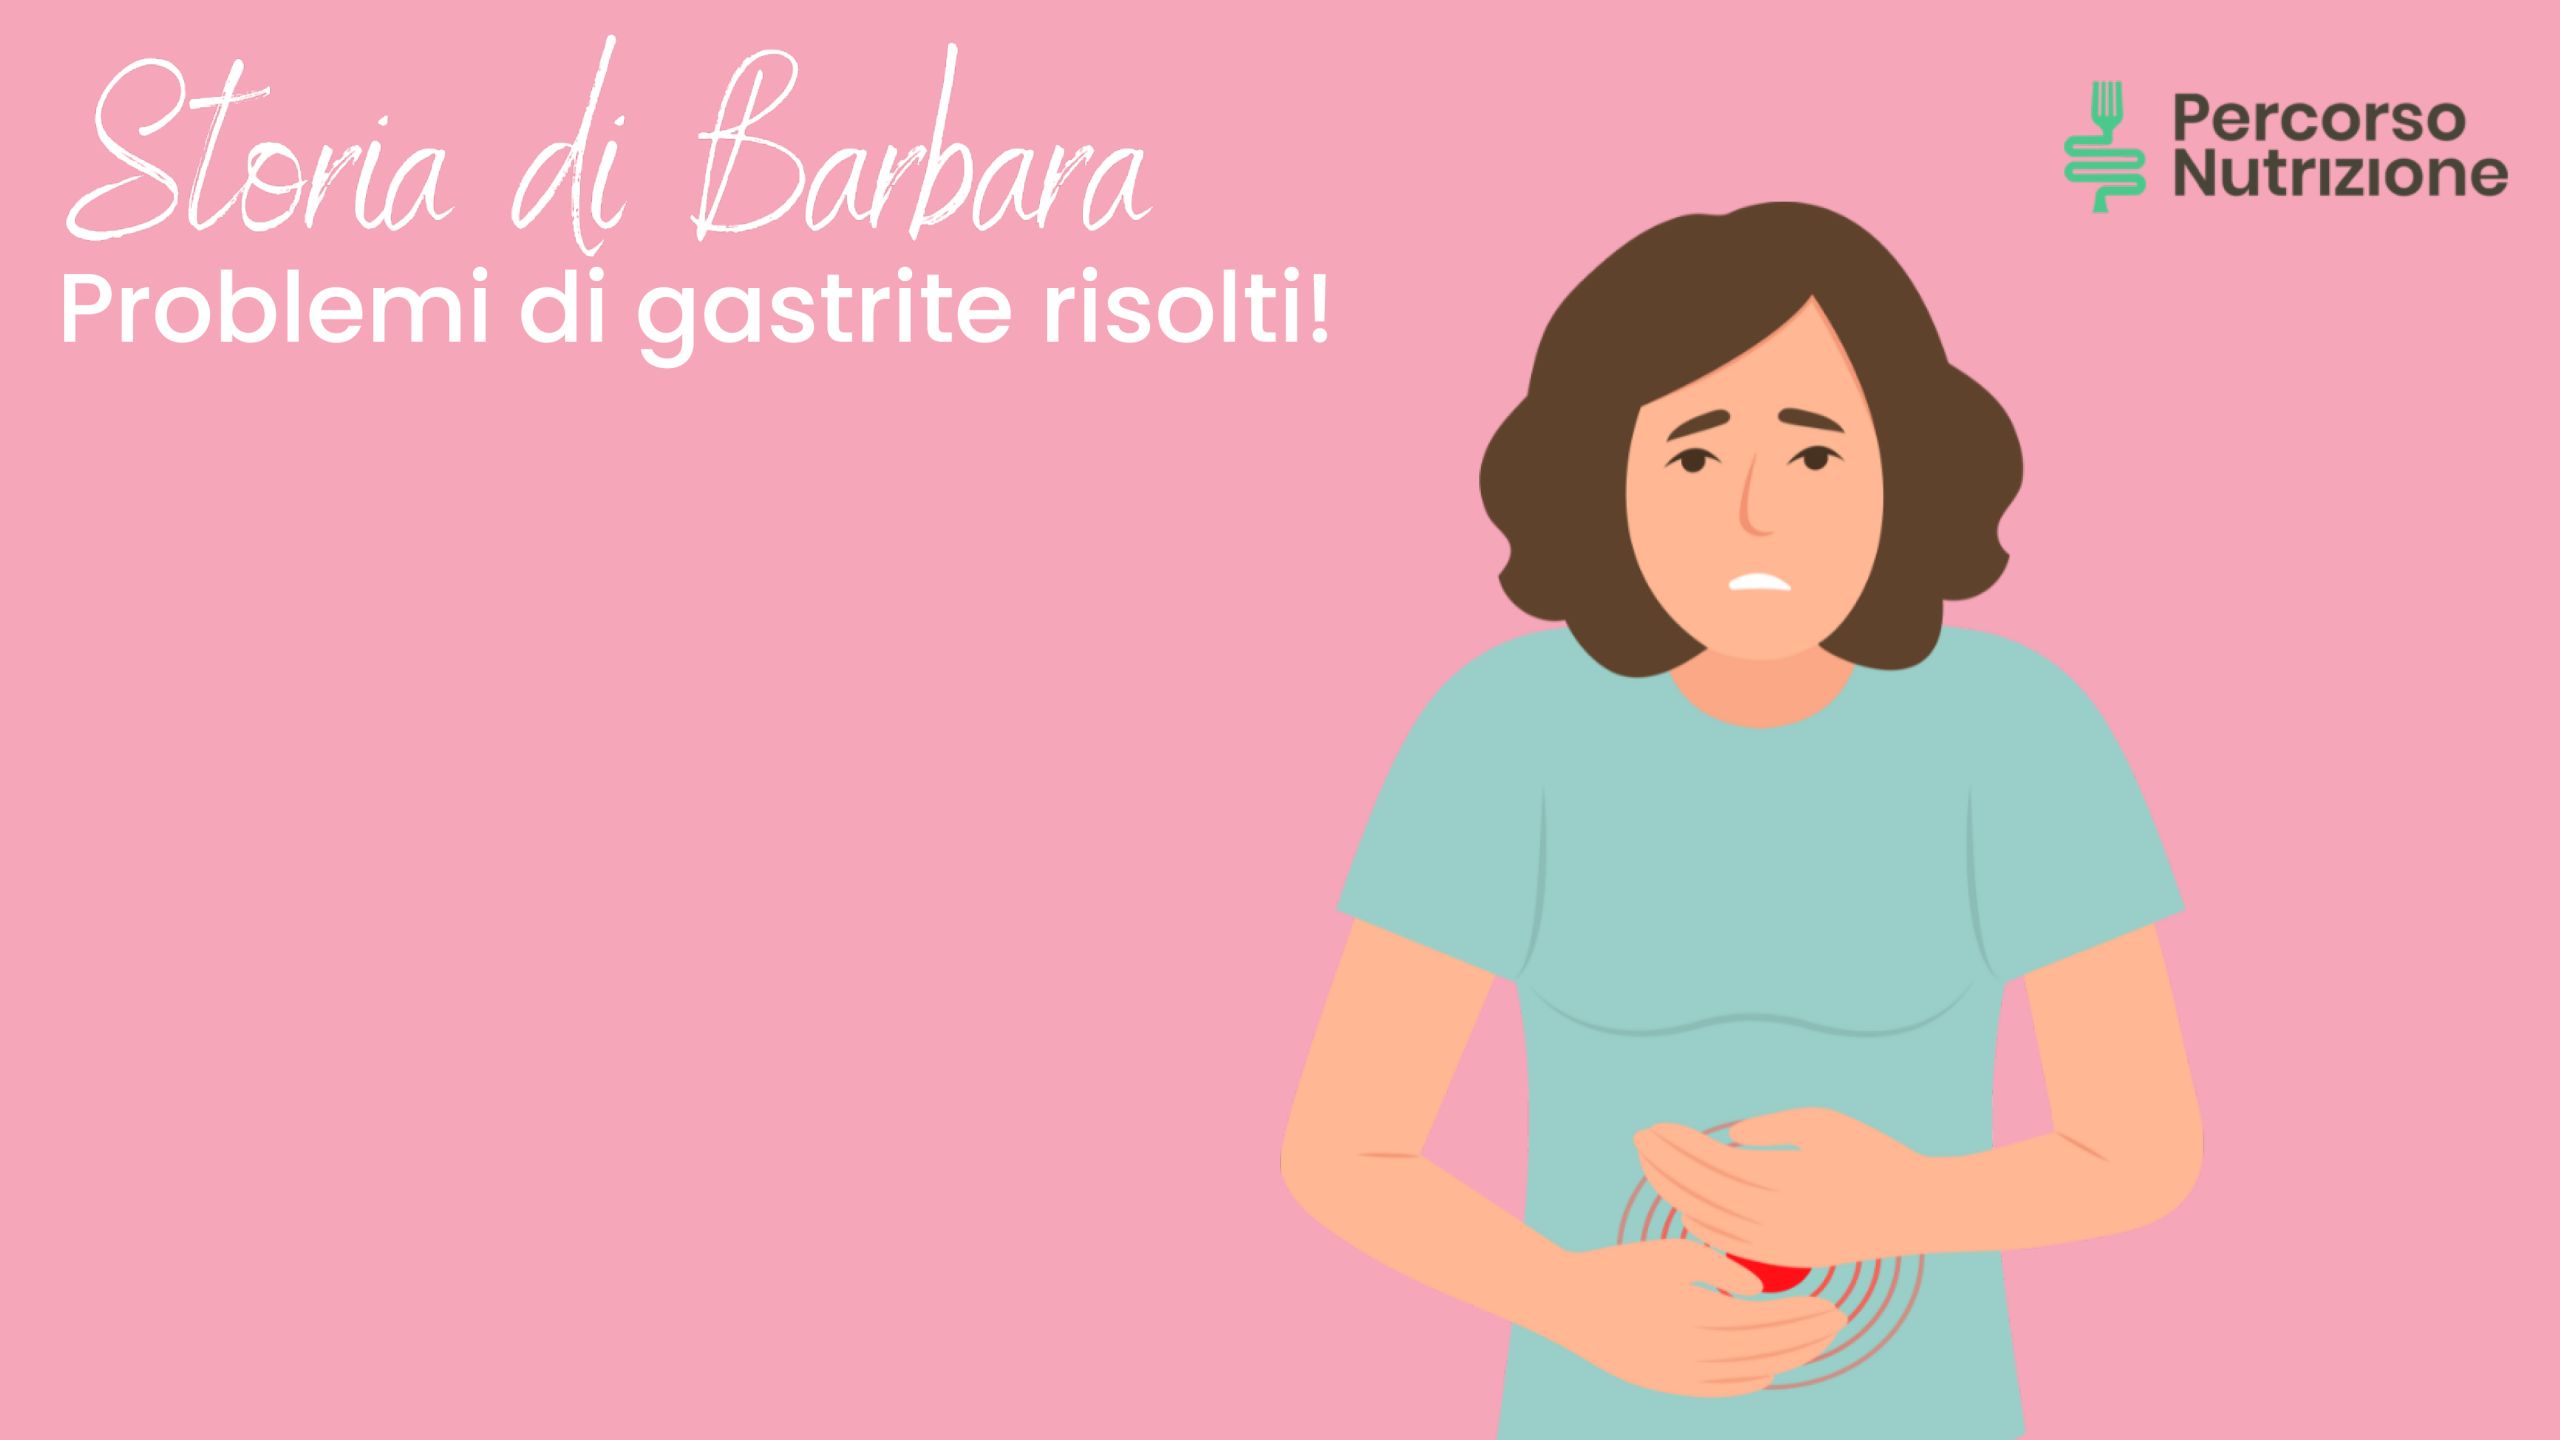 Storia di Barbara - Problemi di gastrite risolti